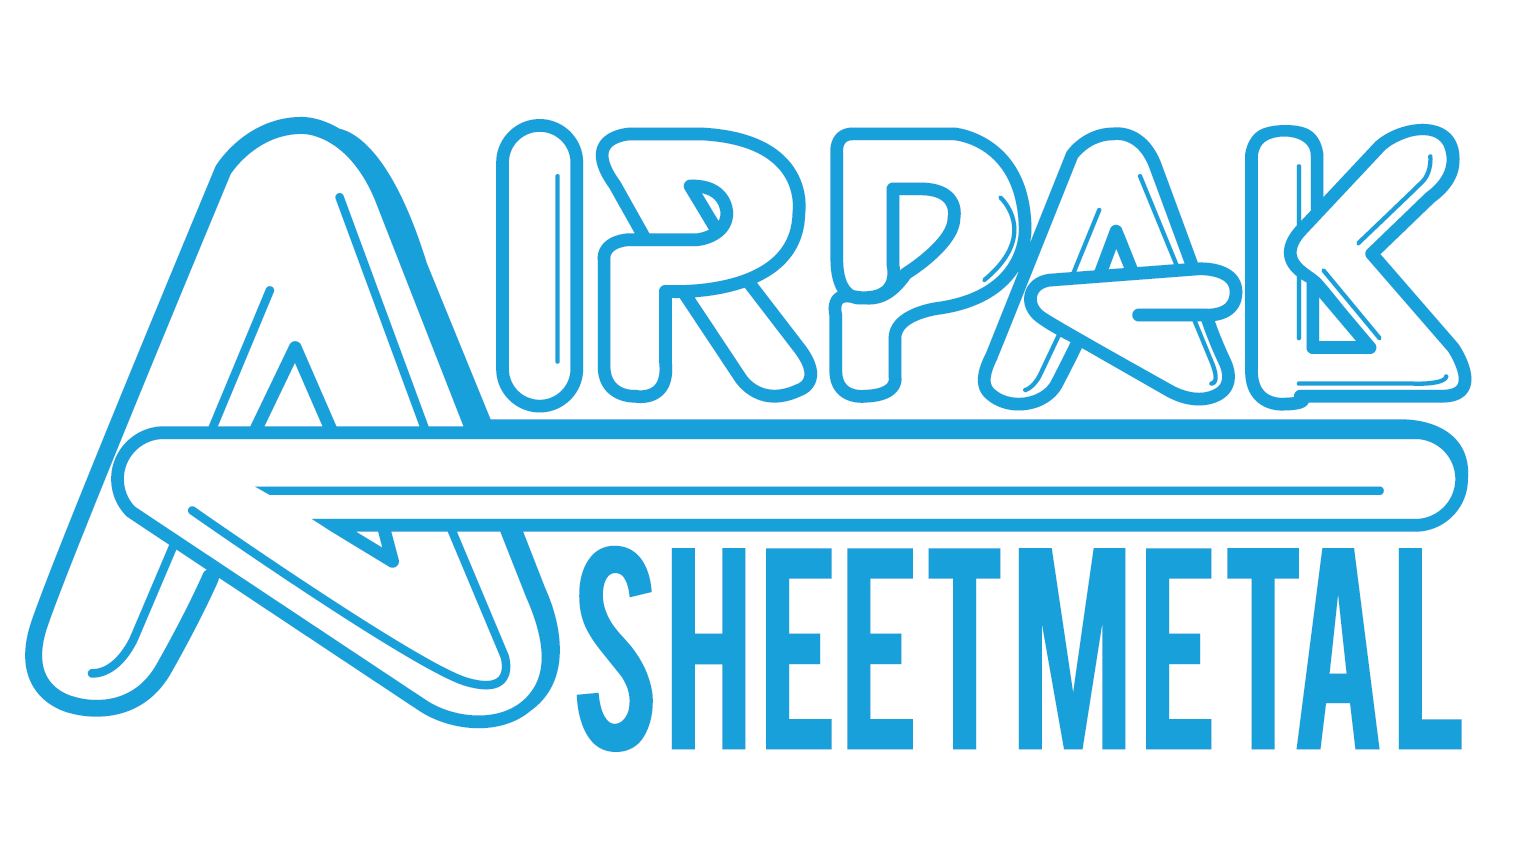 Airpak Sheetmetal